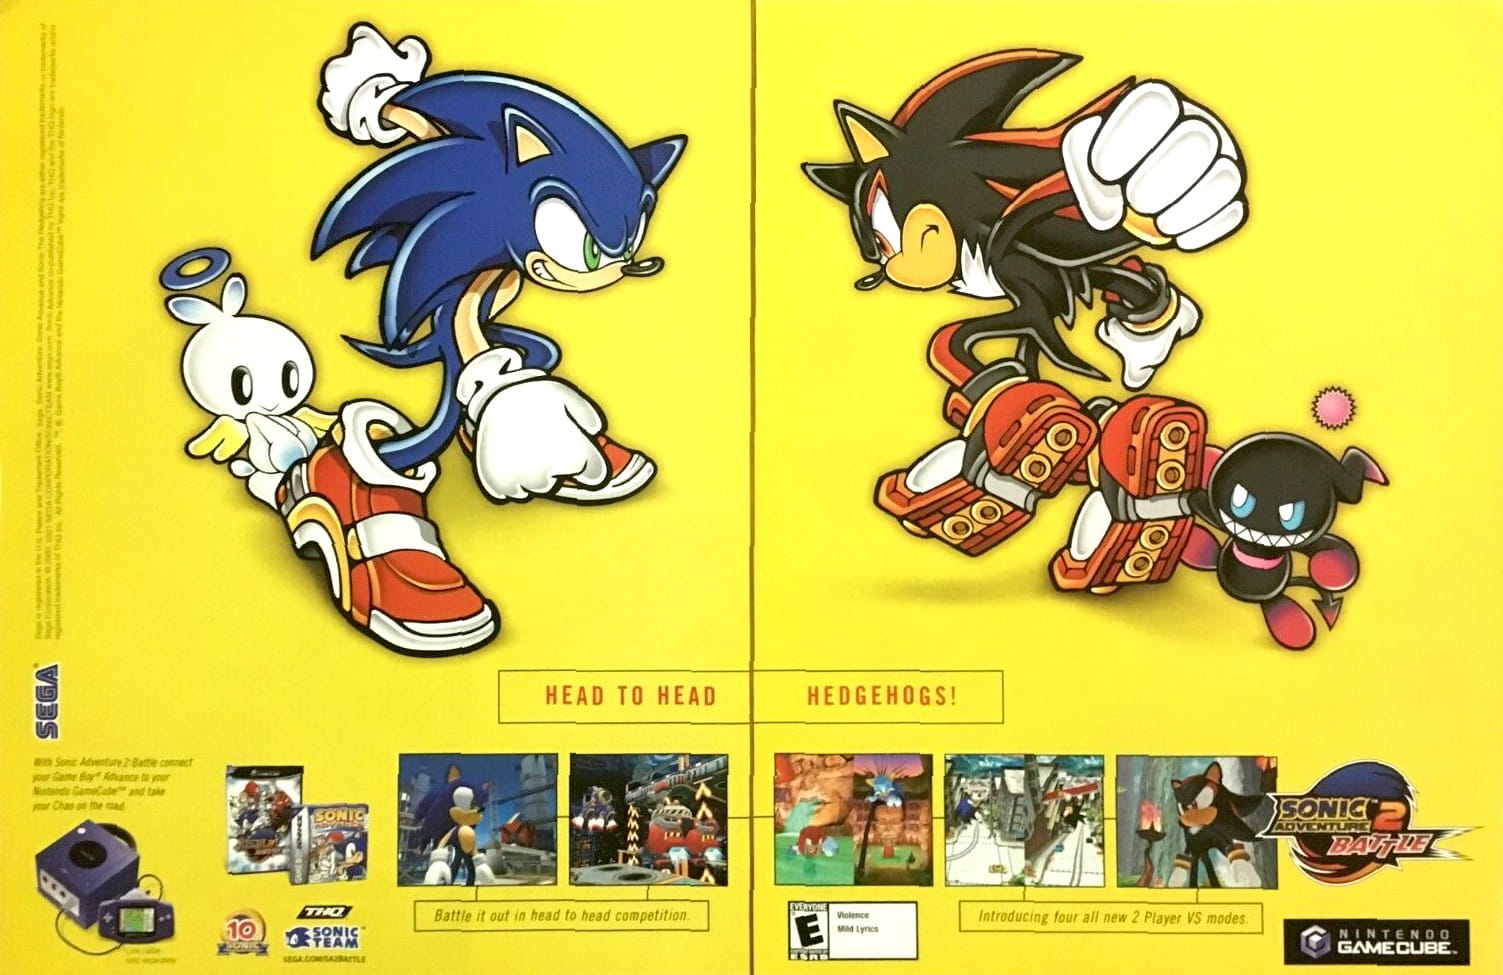 Sonic Adventure 2 Battle - GameCube: Gamecube: Video Games 